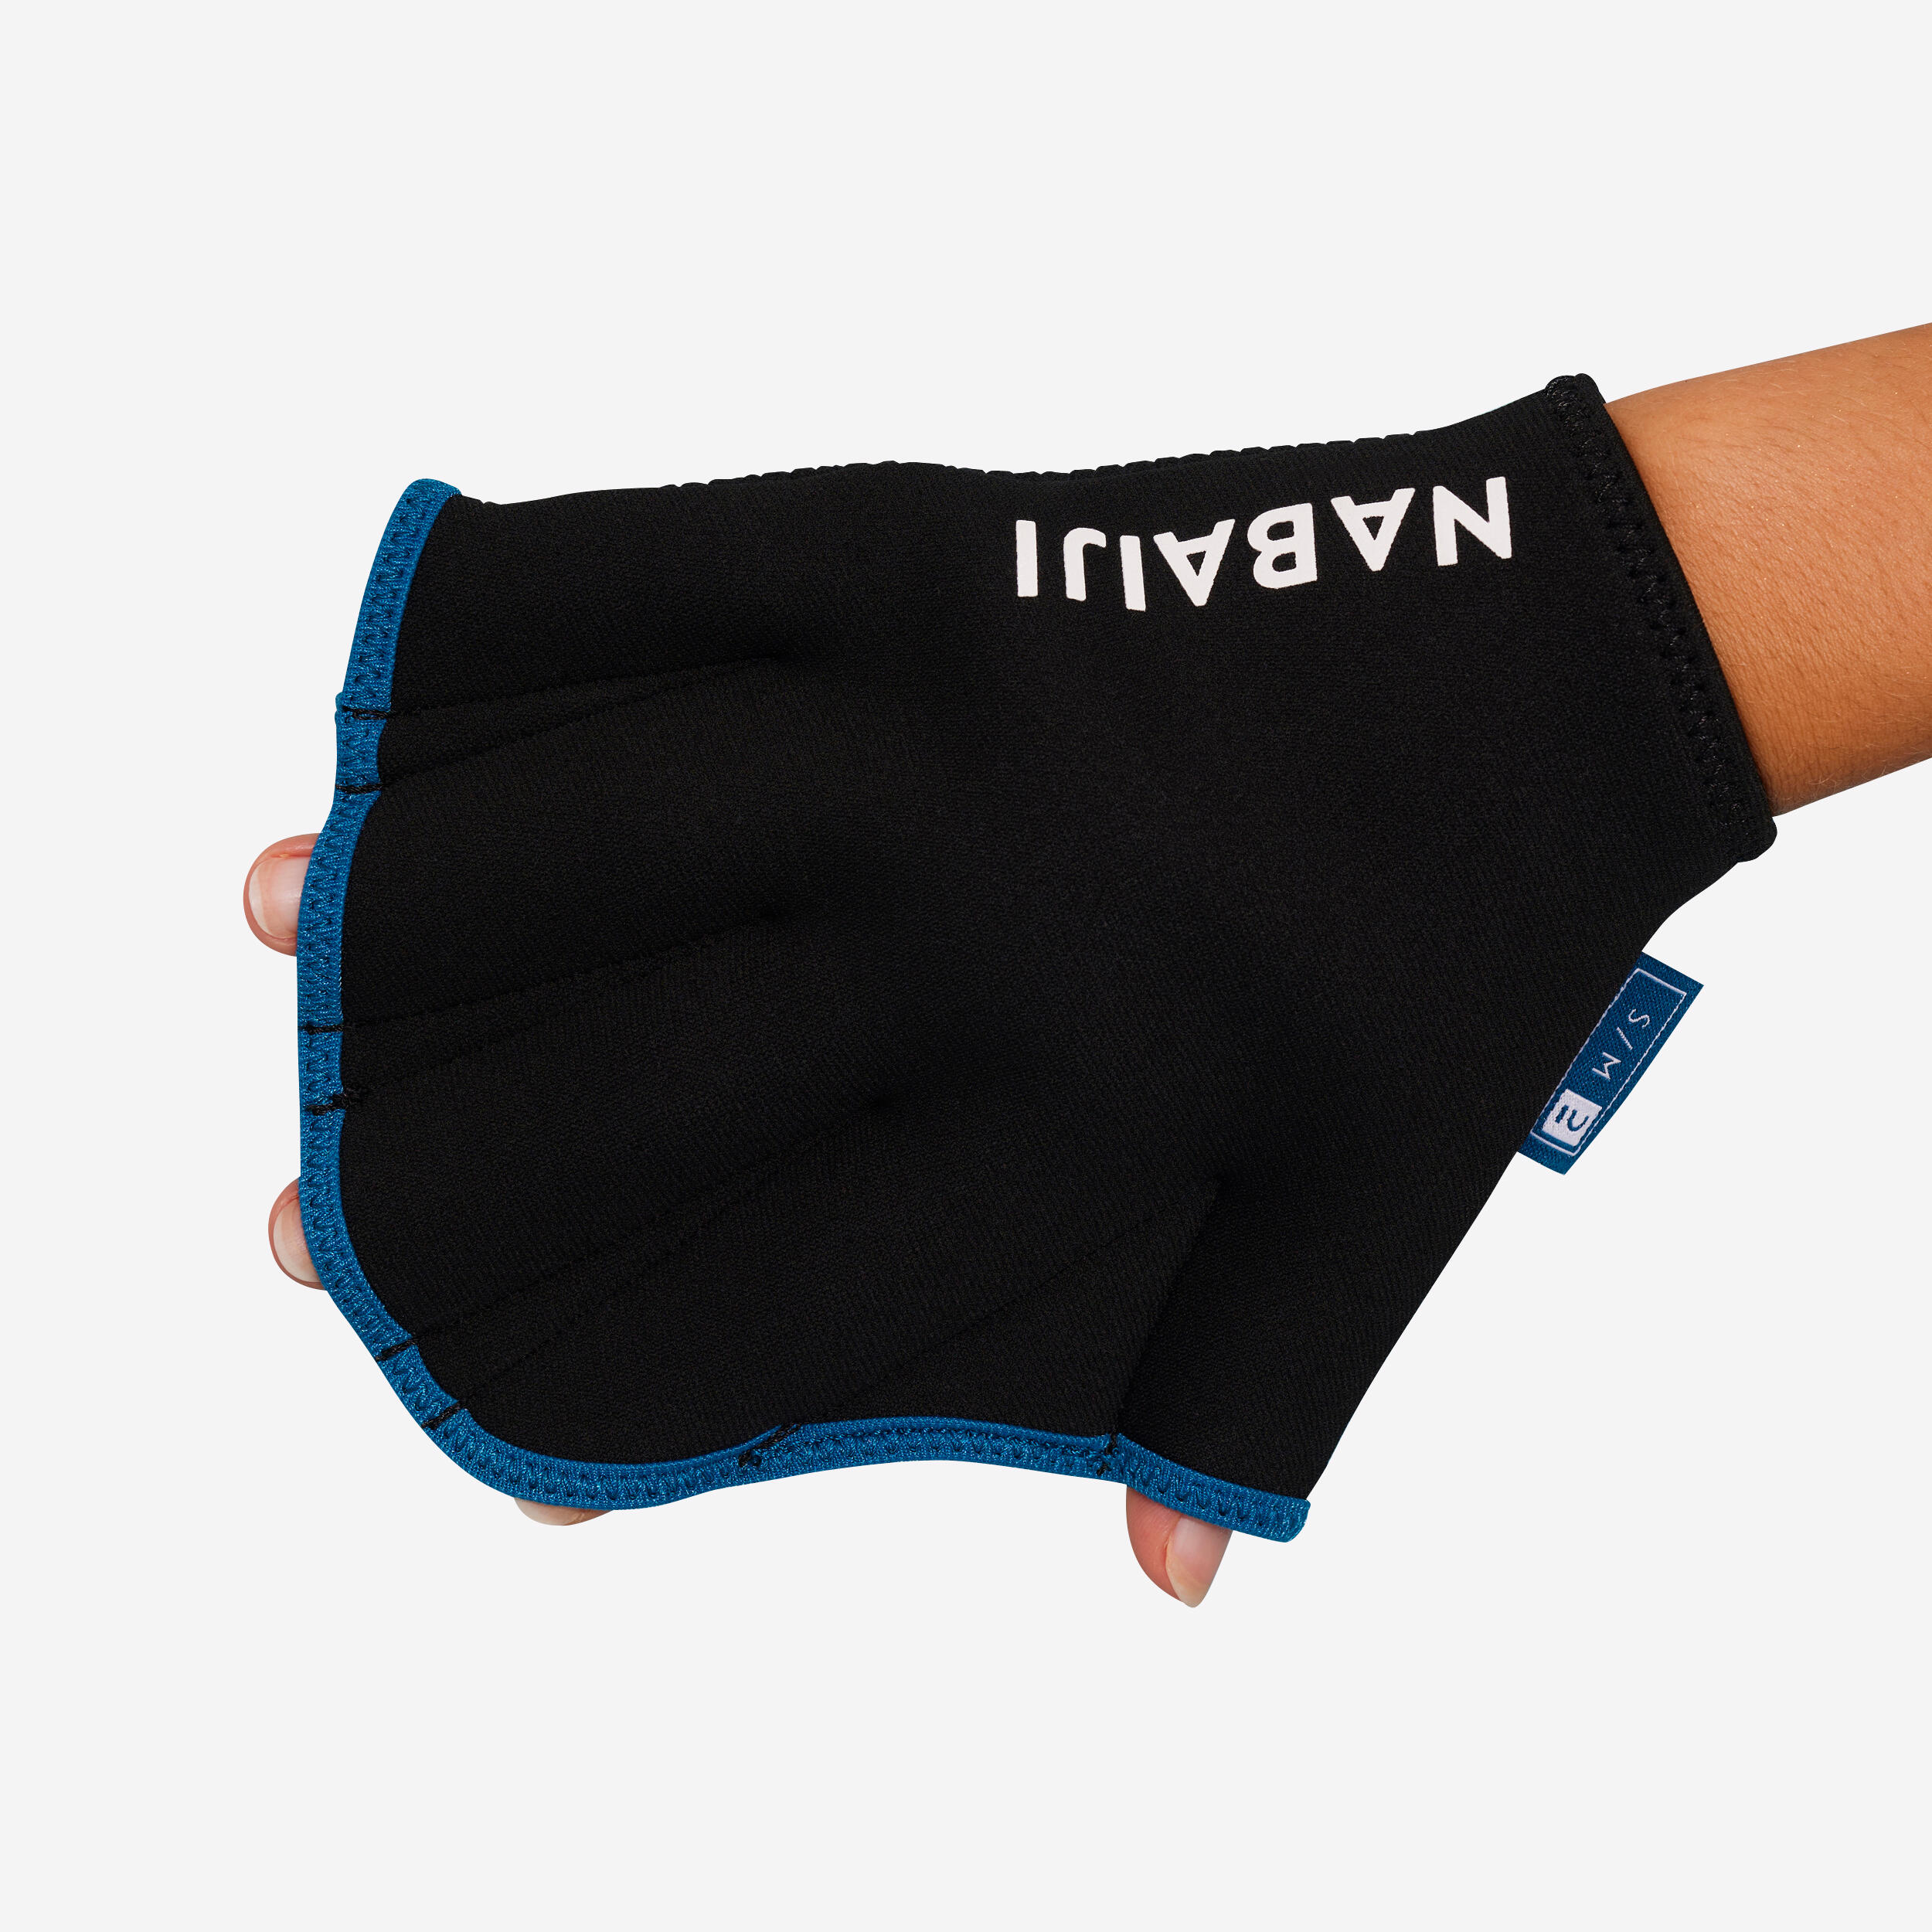 Webbed Neoprene Aquafitness Gloves